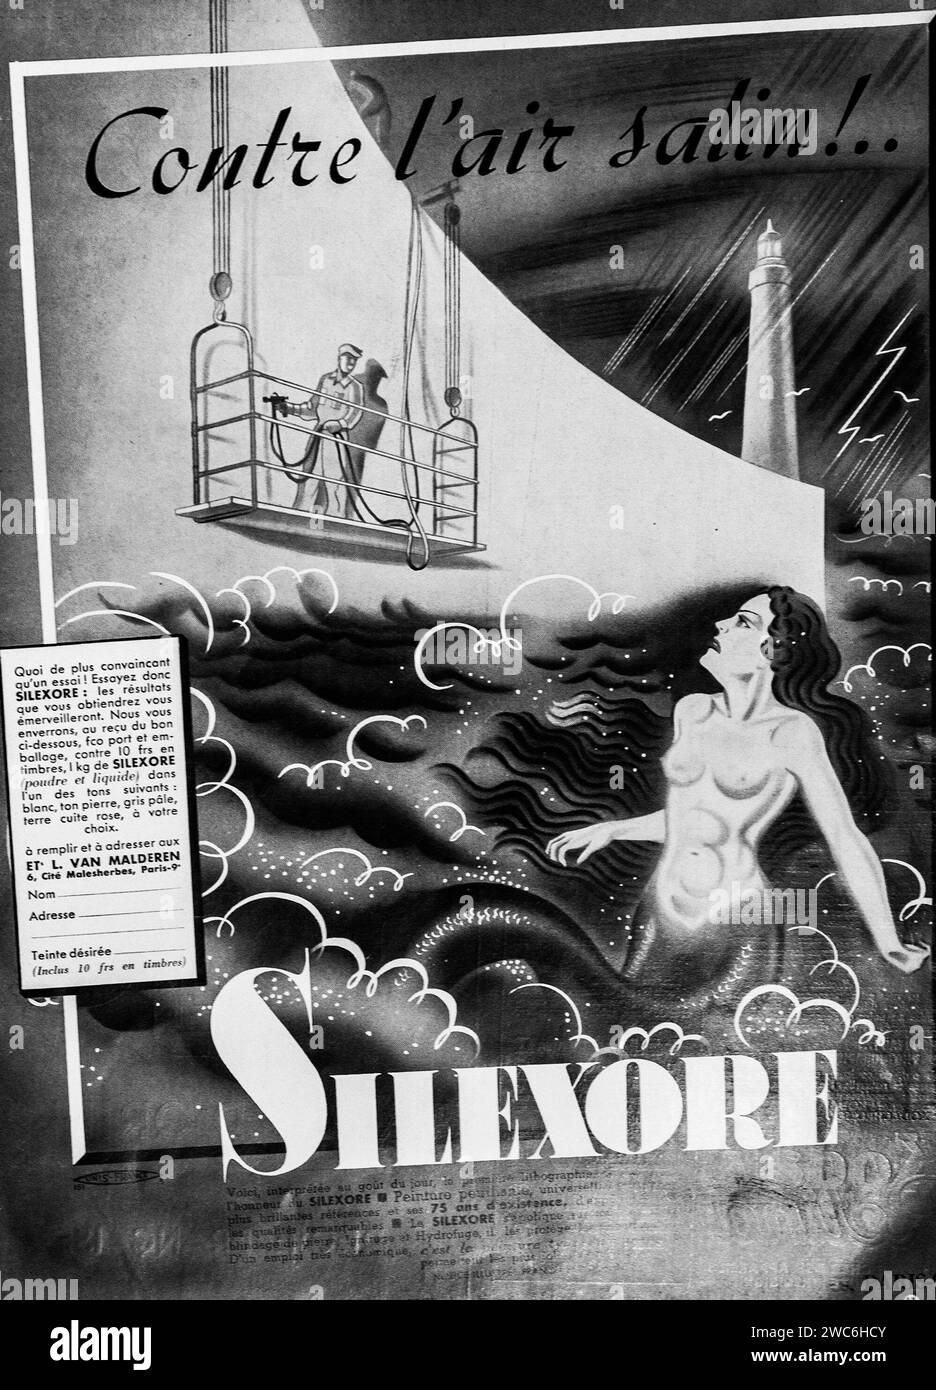 Questo poster in bianco e nero degli anni '1930 pubblicizza Silexore Paint con opere d'arte che combinano elementi marini mitici e industriali, accennando alle qualità protettive dei prodotti. Foto Stock